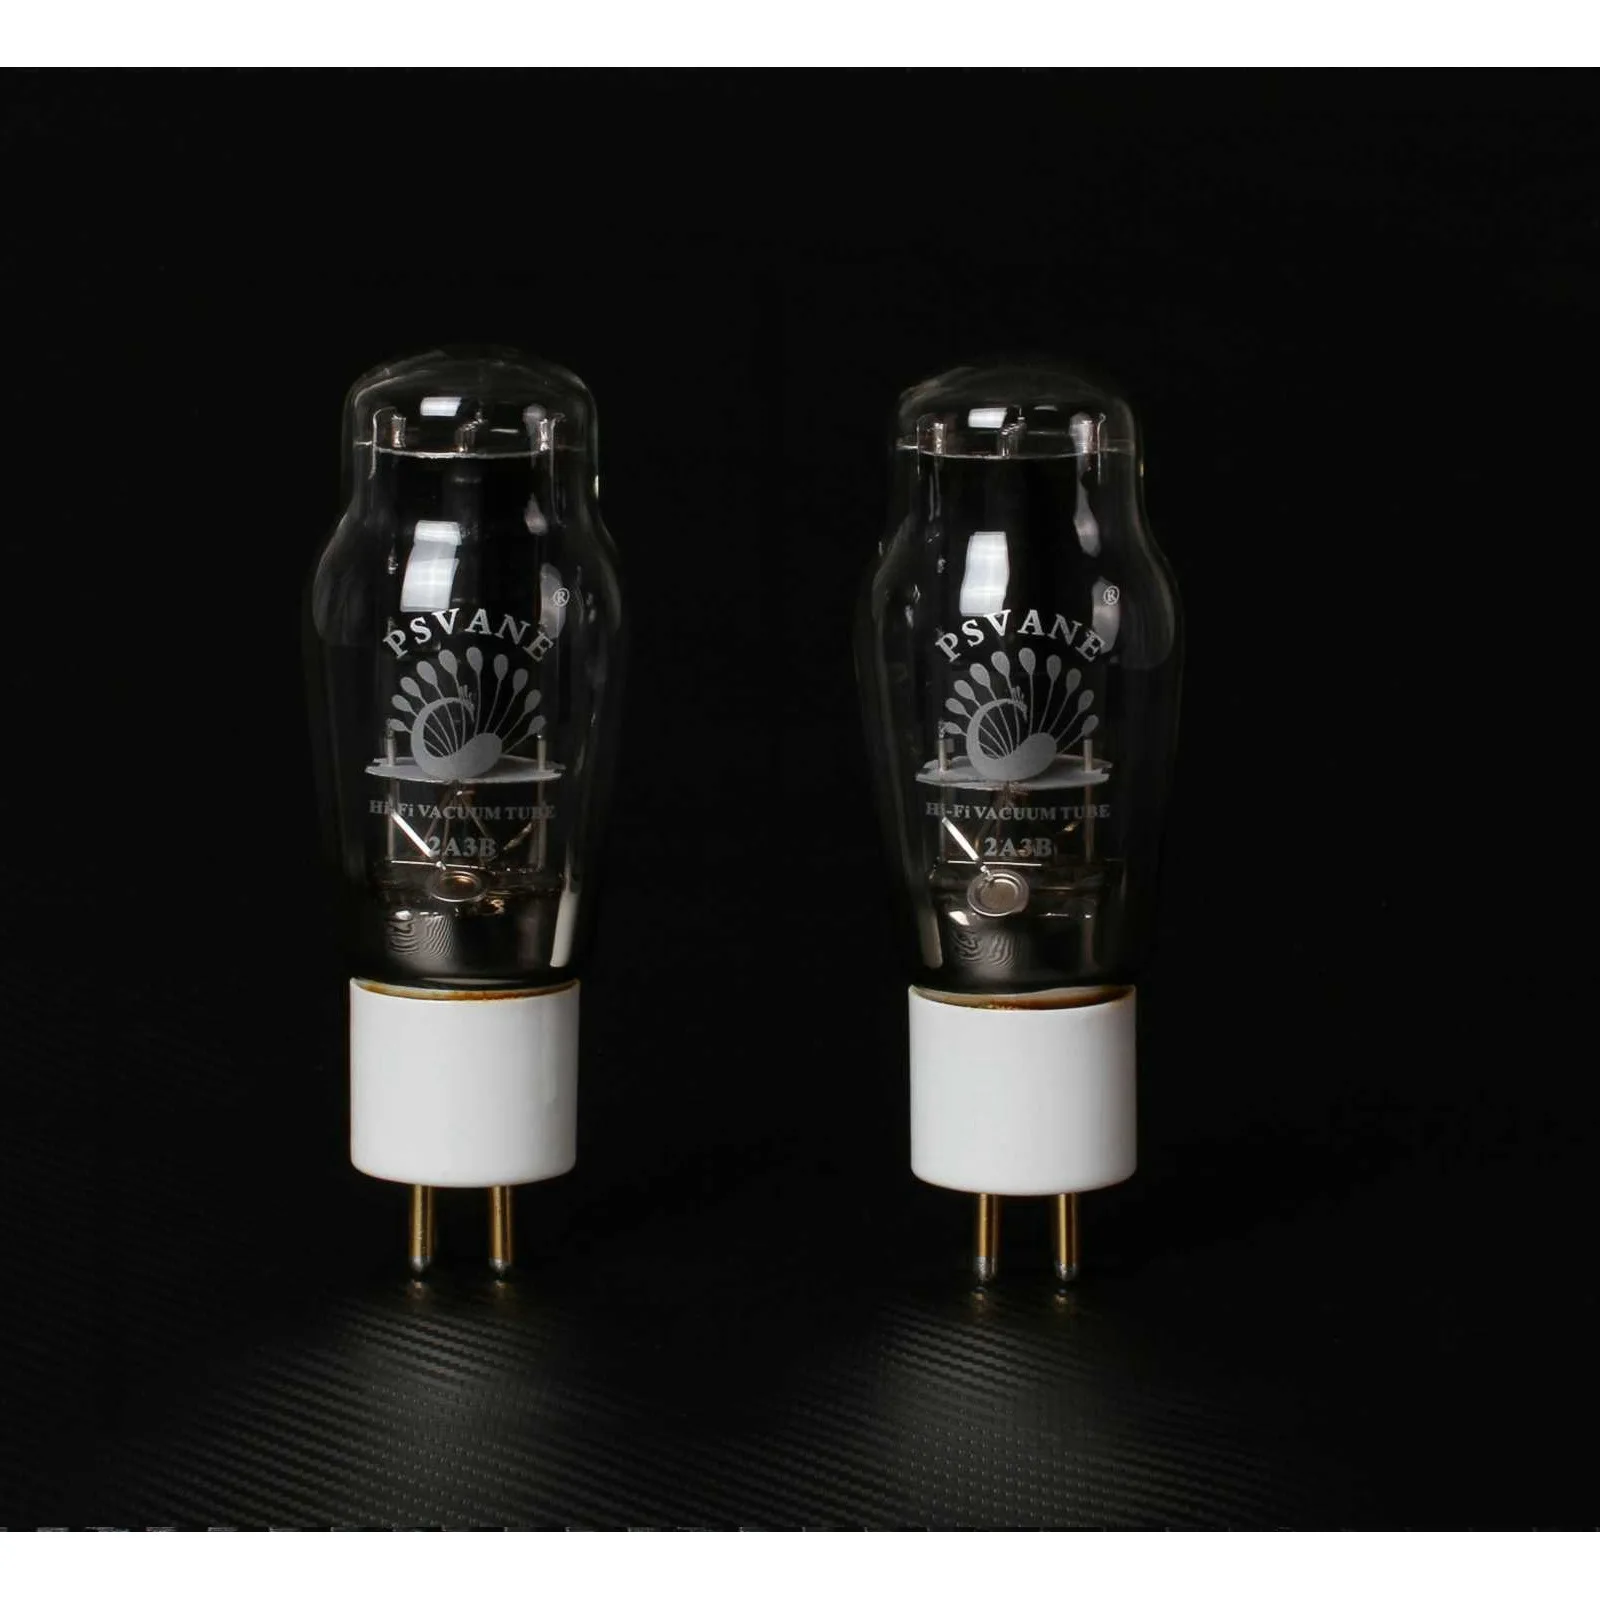 

2 Pcs/Pairs для PSVANE 2A3B Hi-Fi серии вакуумных трубок сварочное оборудование аппараты для сварки труб аудио вакуумных трубок